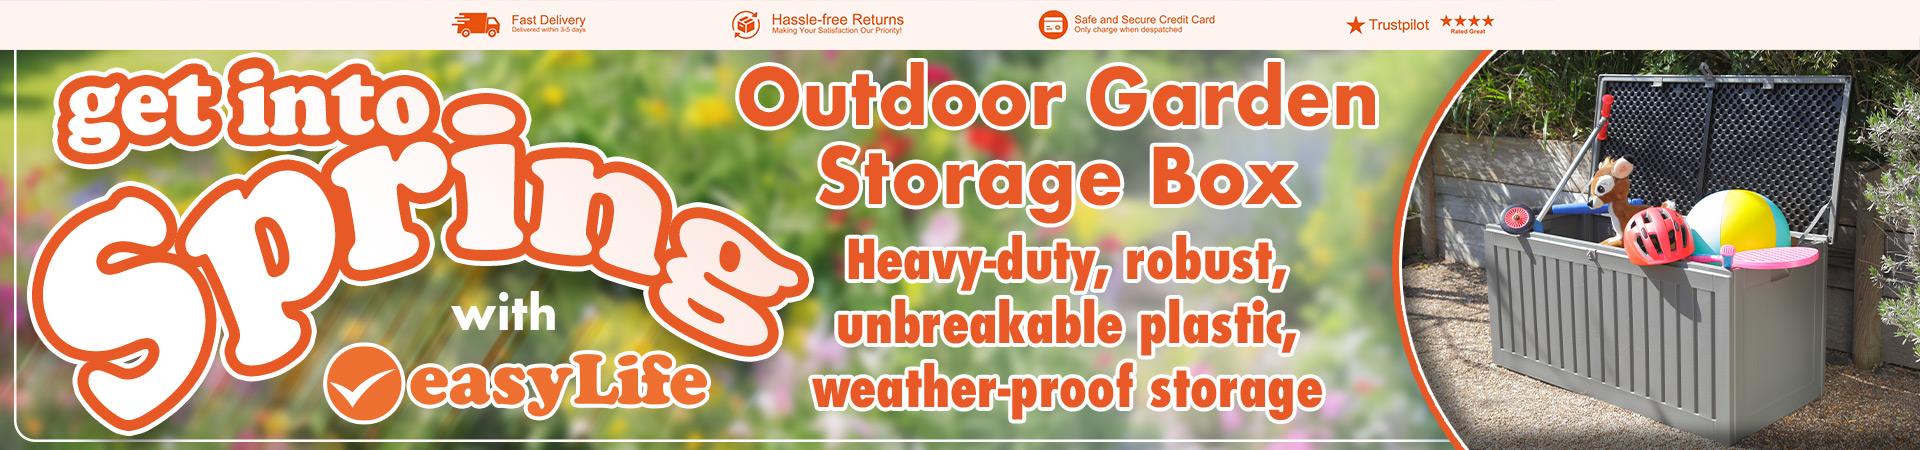 Banner - Outdoor Garden Storage Box